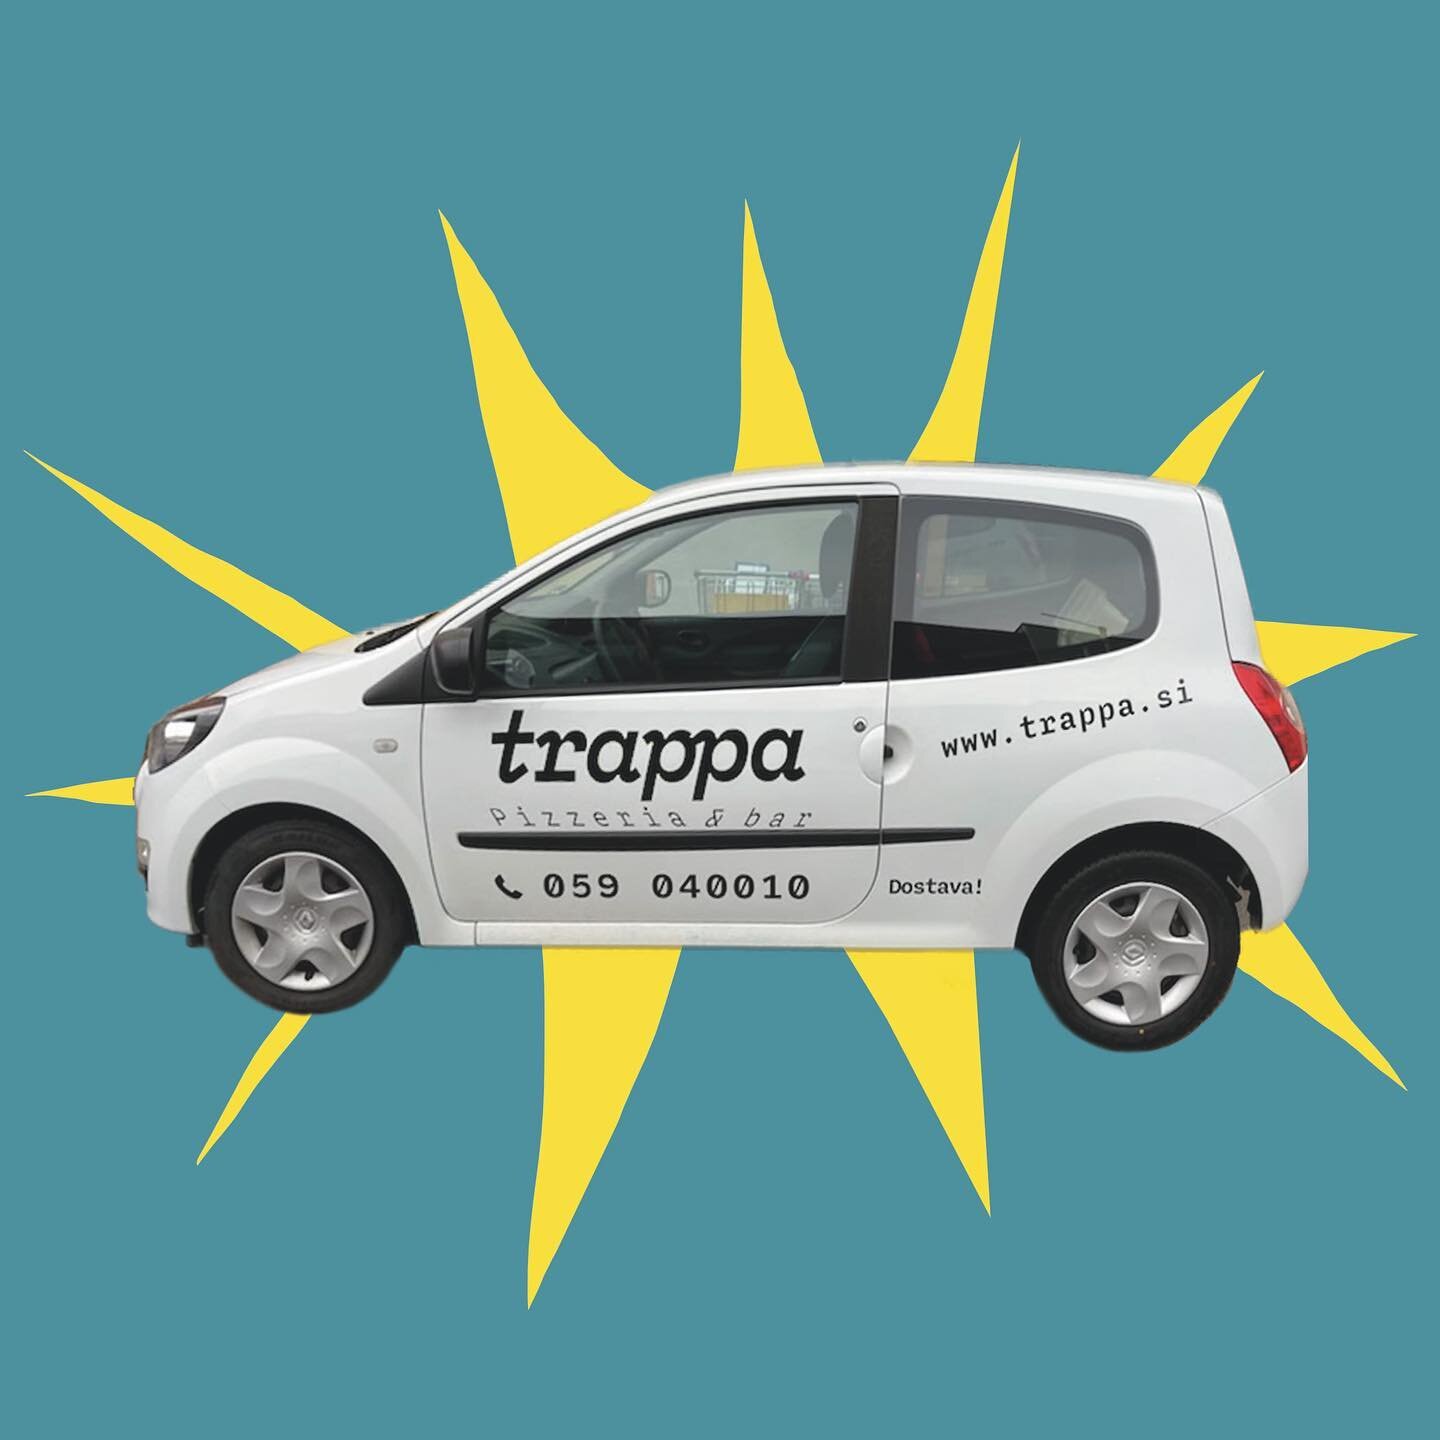 Trappina dostava je hitra in ugodna ⚡️ 🚗 🍕 
Našo ponudbo si lahko ogledate na spletni strani www.trappa.si, kjer tudi naročite ali pa pokličete na 059 040 010 ✌🏻 Lep sončen dan želimo! 🌞
.
.
.
.
#trappa  #trappapizza #pizza #trappadostava  #